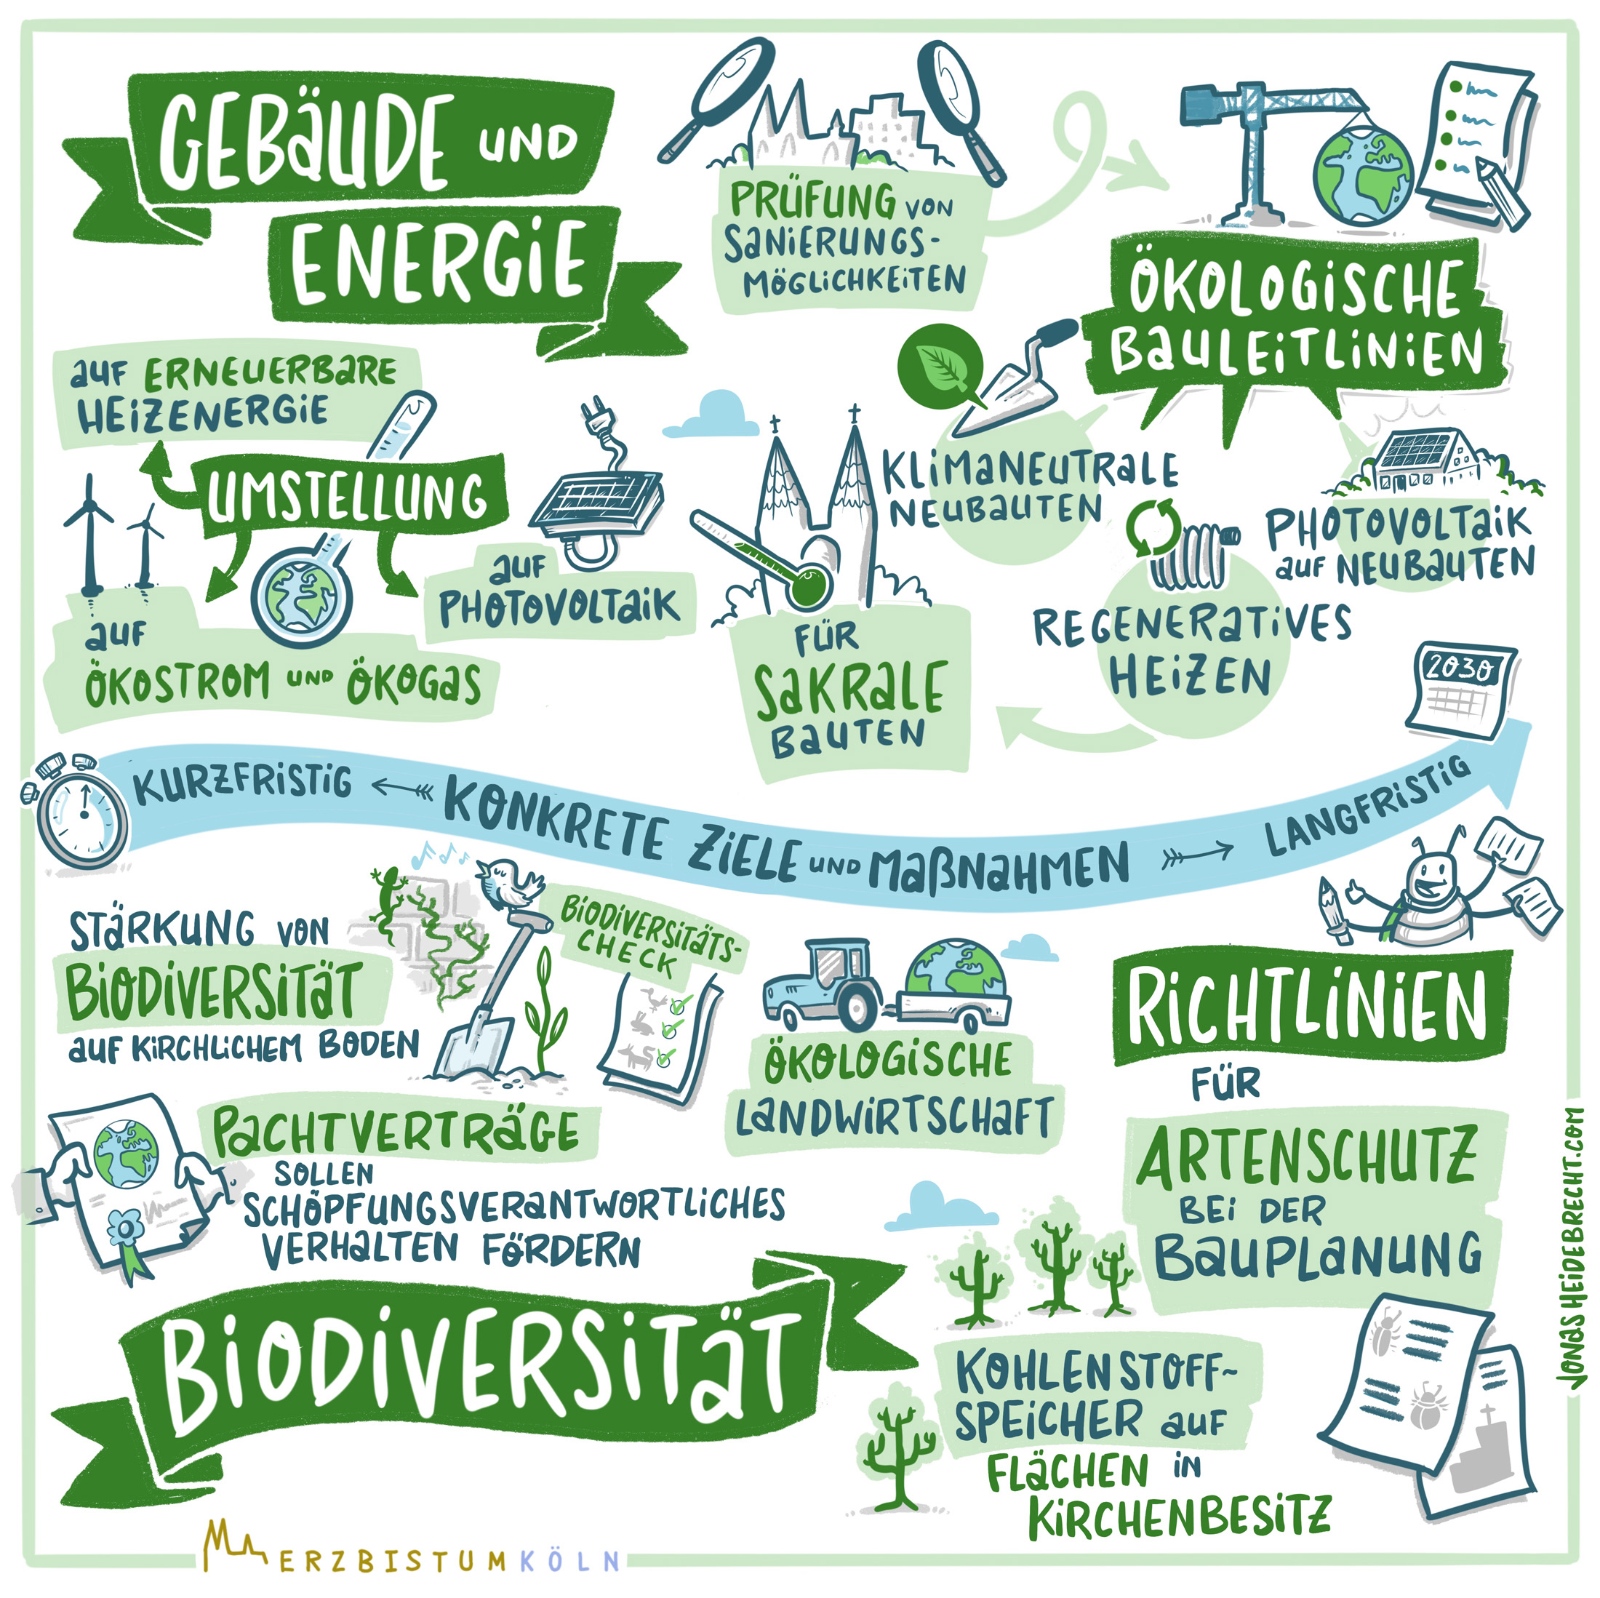 Konkrete Ziele der Vision Schöpfungsverantwortung 2030 in den Bereichen Gebäude + Energie und Biodiversität – Illustration